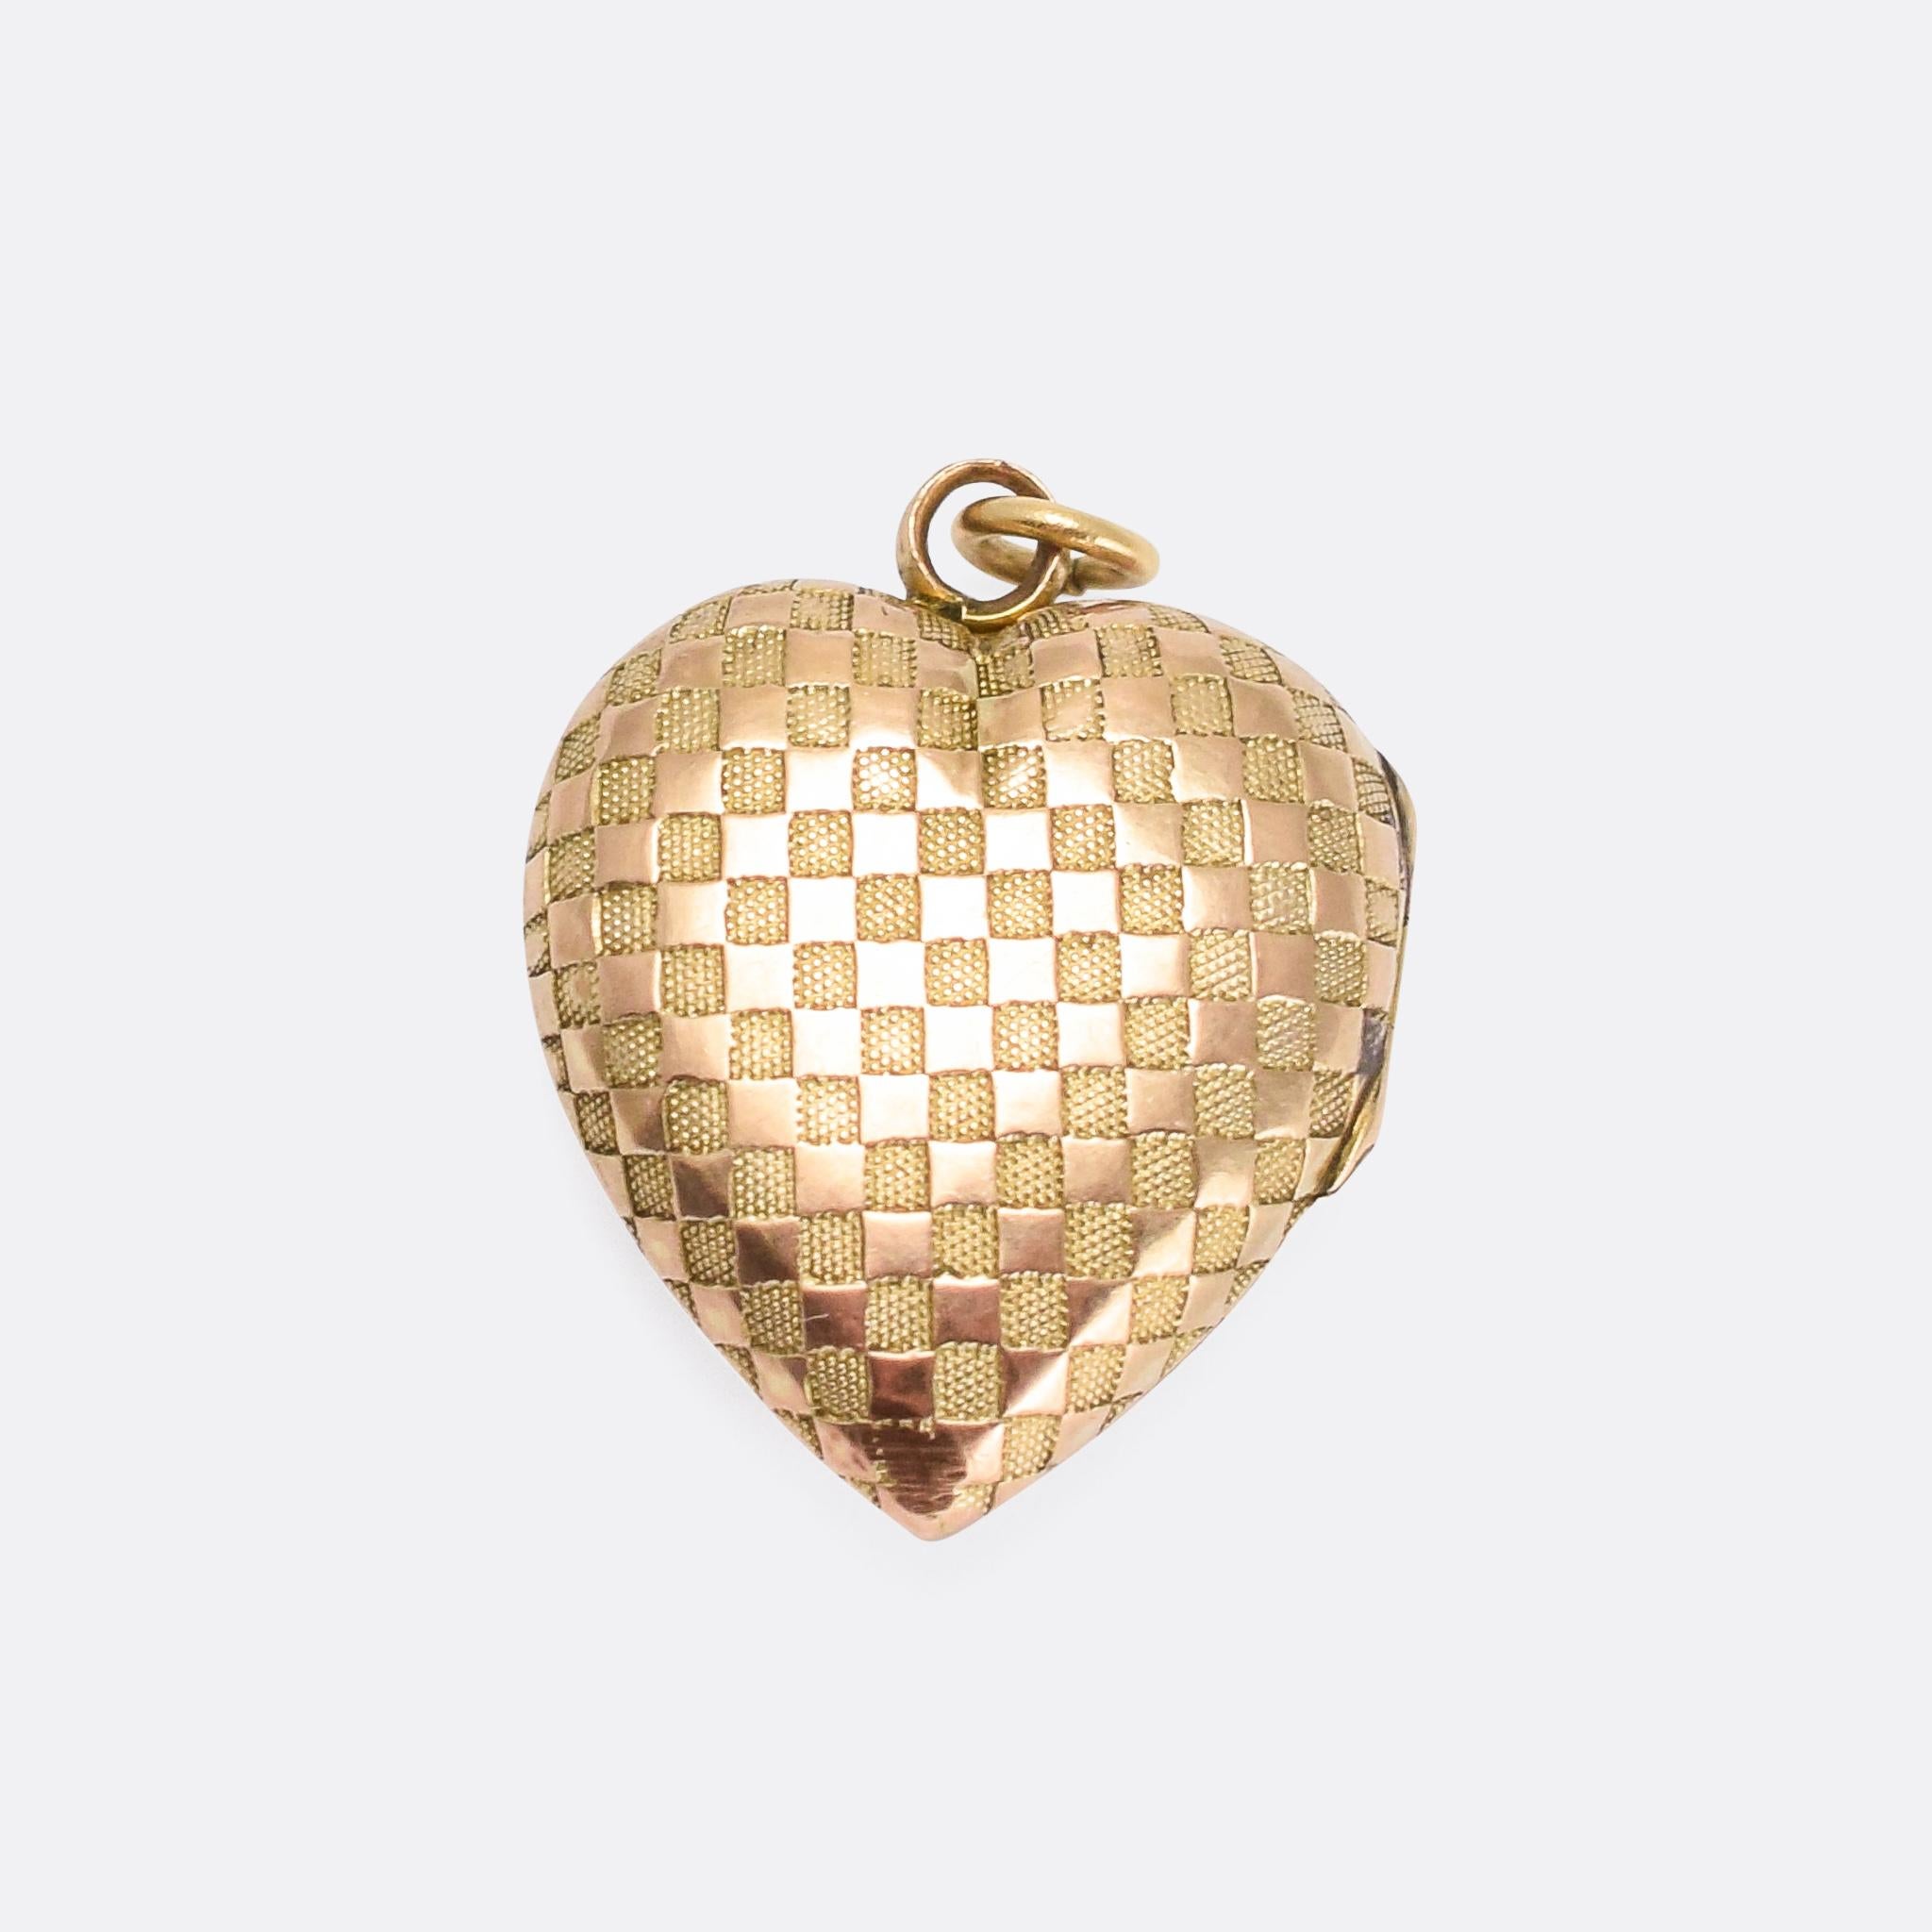 Ein süßes antikes Herzmedaillon aus der späten viktorianischen Ära:: um 1900. Die Vorder- und Rückseite sind in 9-karätigem Gold modelliert und mit einem Schachbrettmuster verziert – abwechselnde Reihen strukturierter und glänzender Quadrate. Es